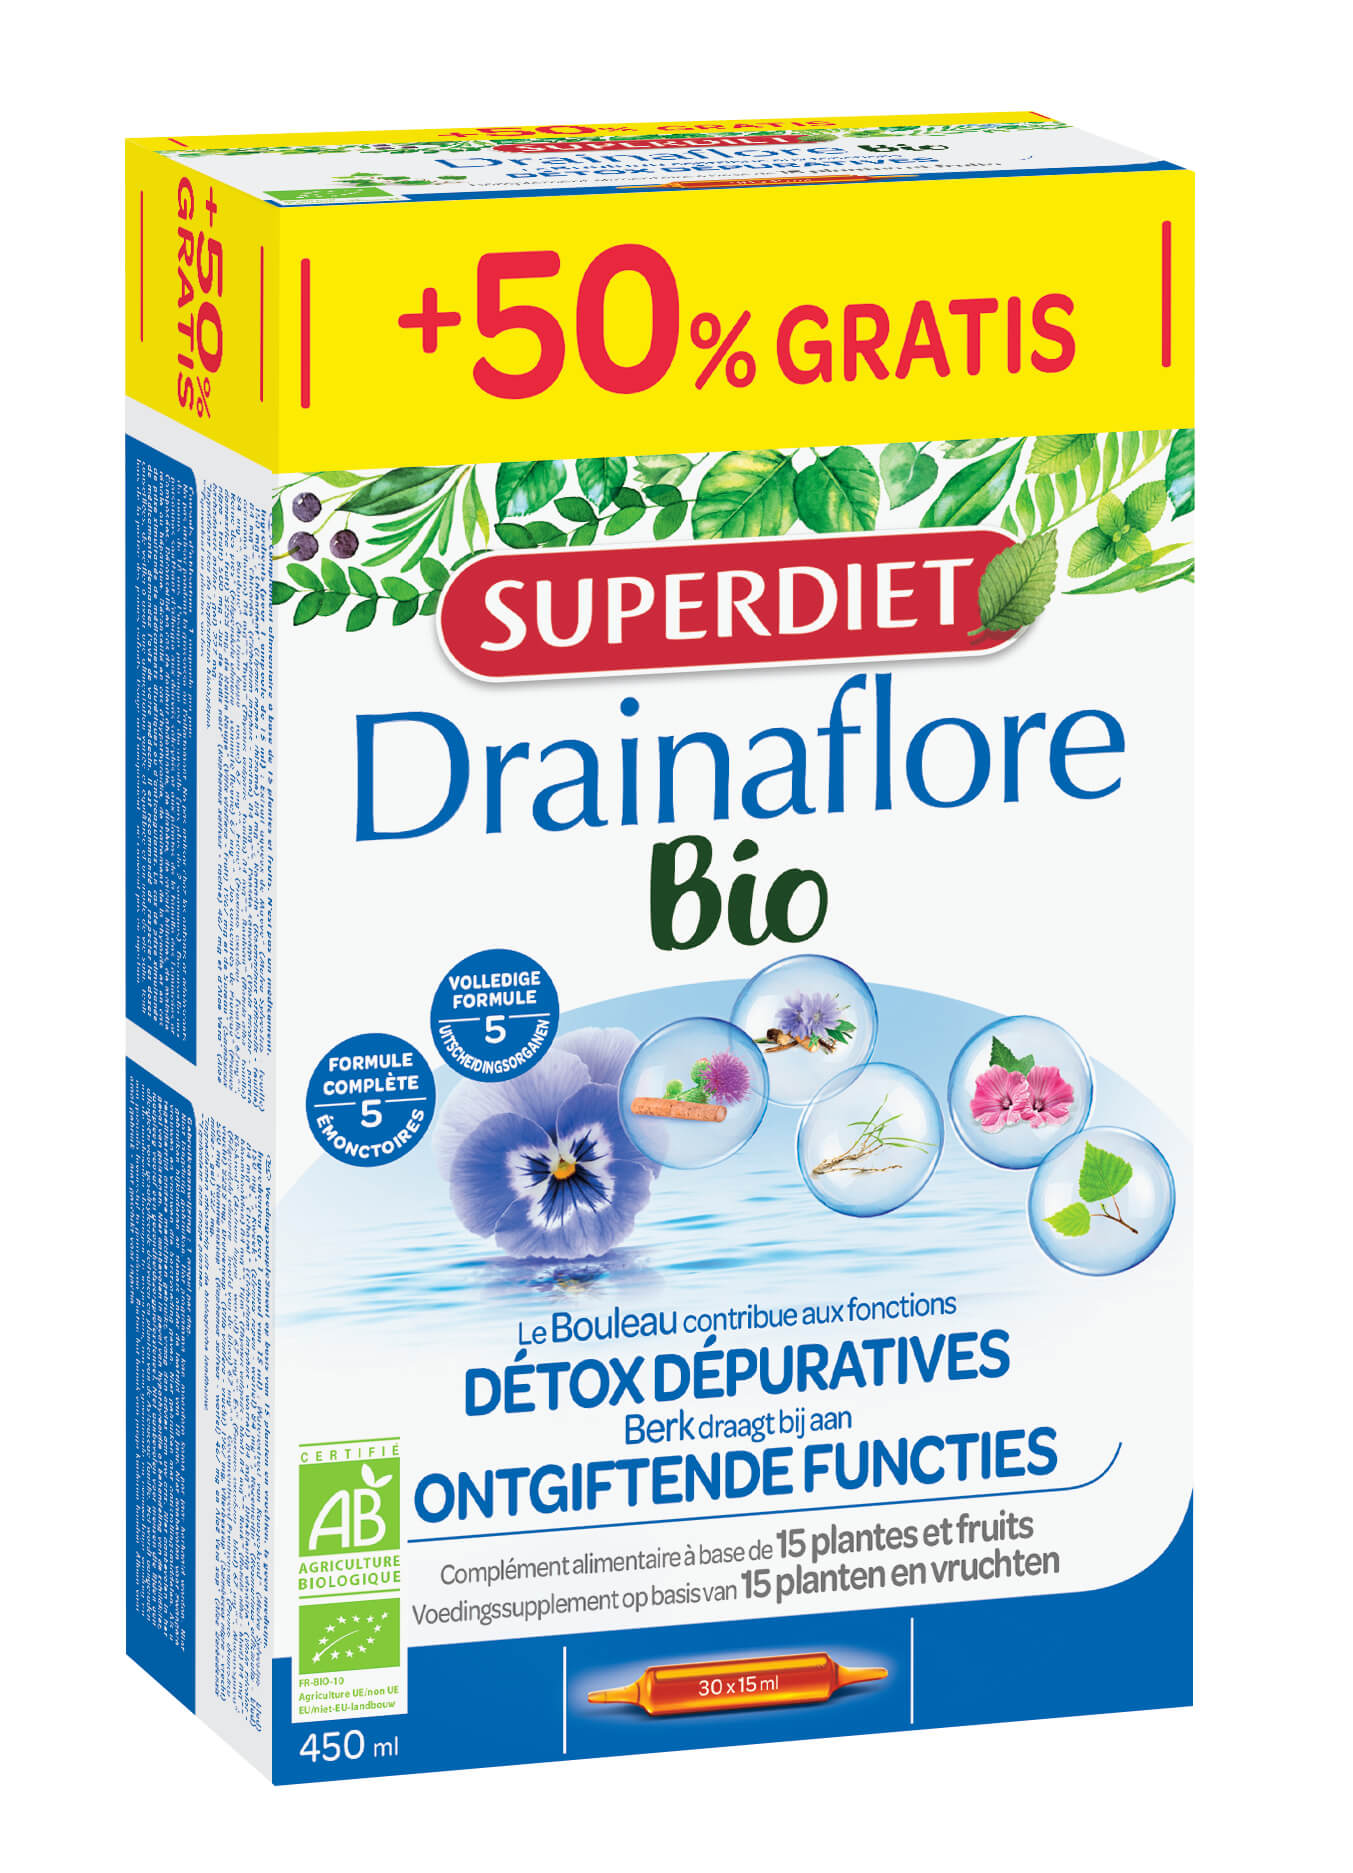 Super Diet Drainaflore bio 20x15ml +50% gratis